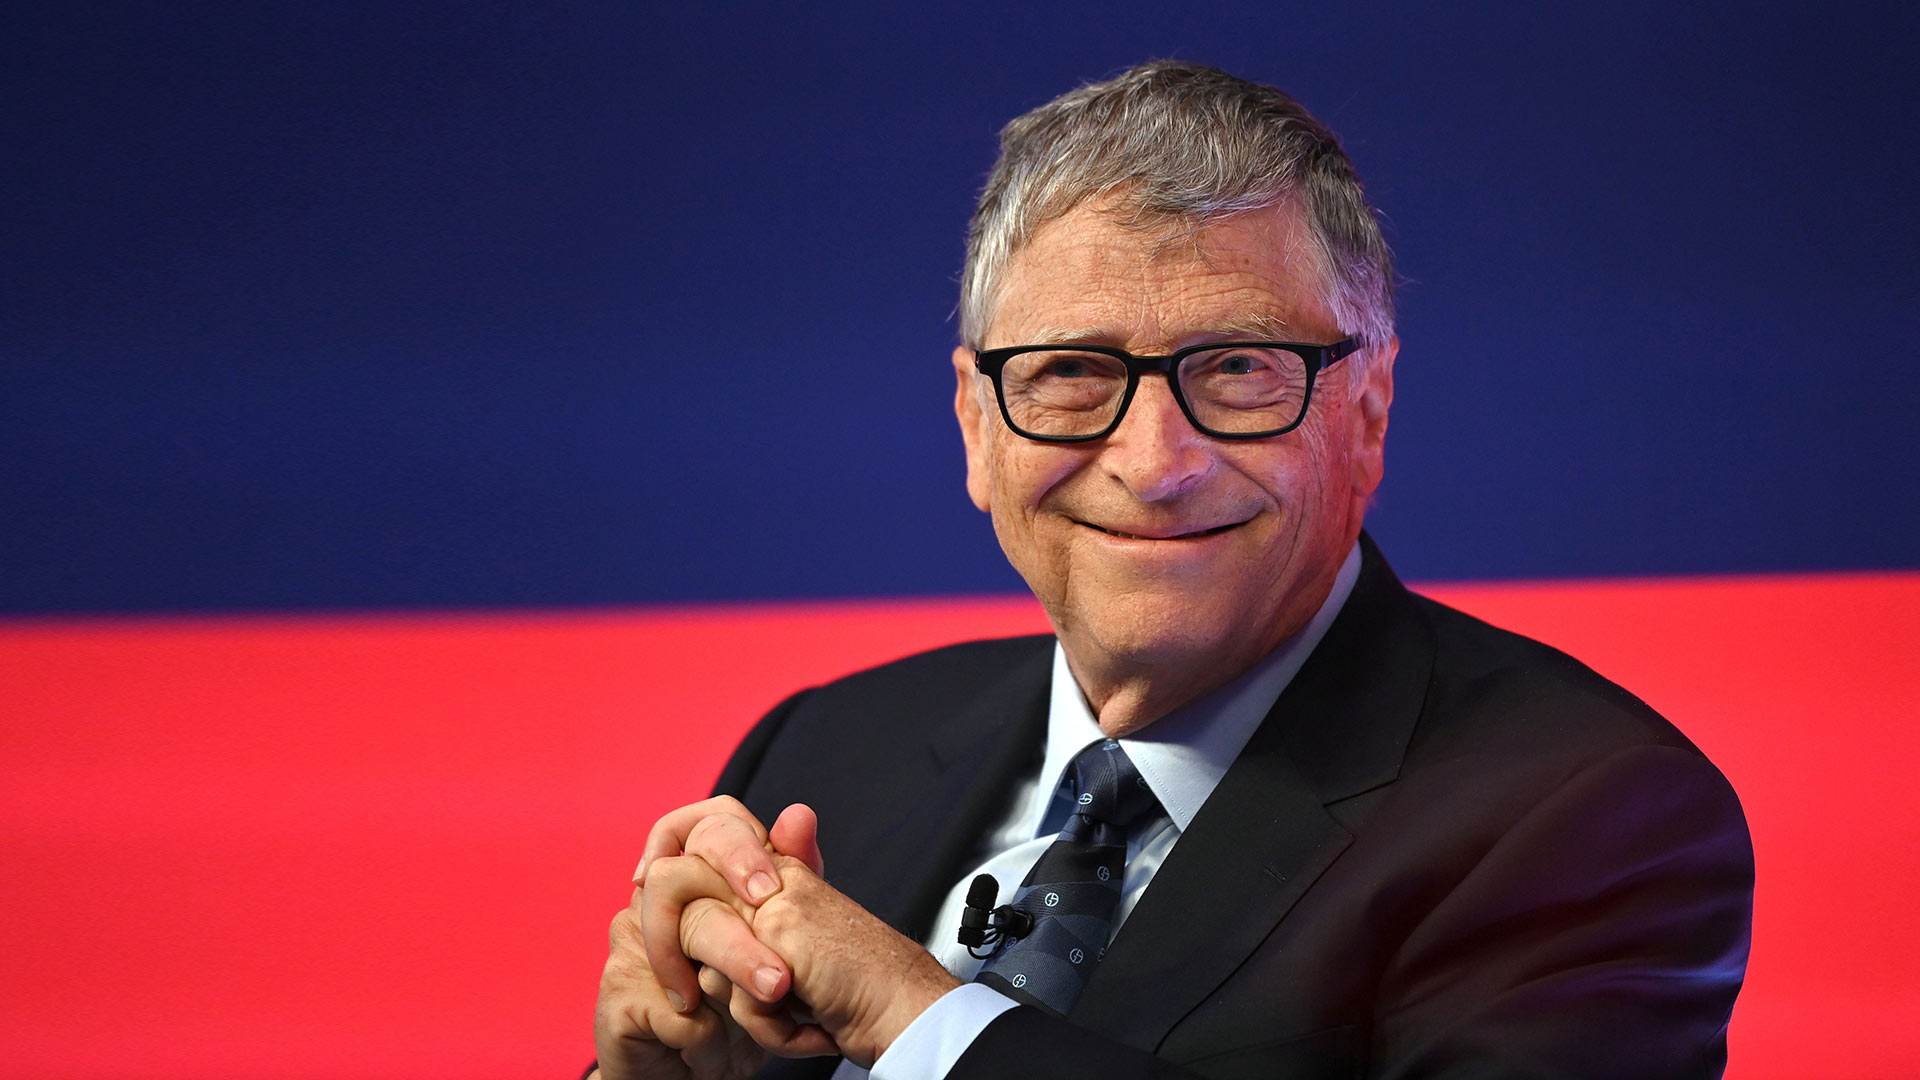 Bill Gates kauft diese zwei Aktien und verrät damit seine Strategie gegen die Inflation (Foto: Leon Neal/Pool via Reuters)